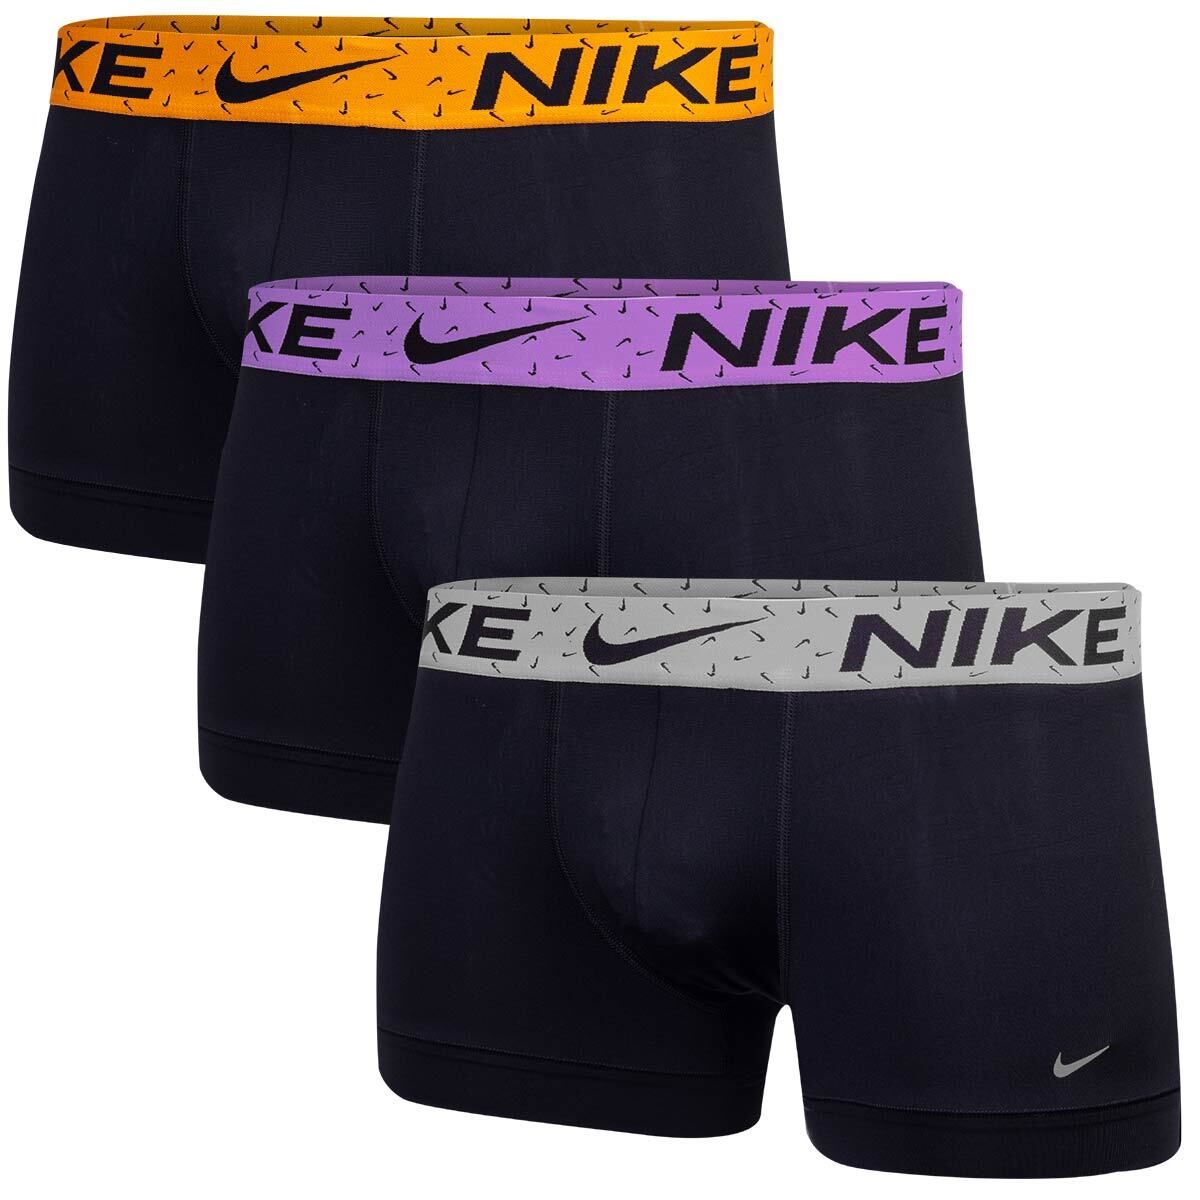 Nike Erkek Marka Logolu Elastik Bantlı Günlük Kullanıma Uygun Siyah Boxer 0000Ke1156-2Nd